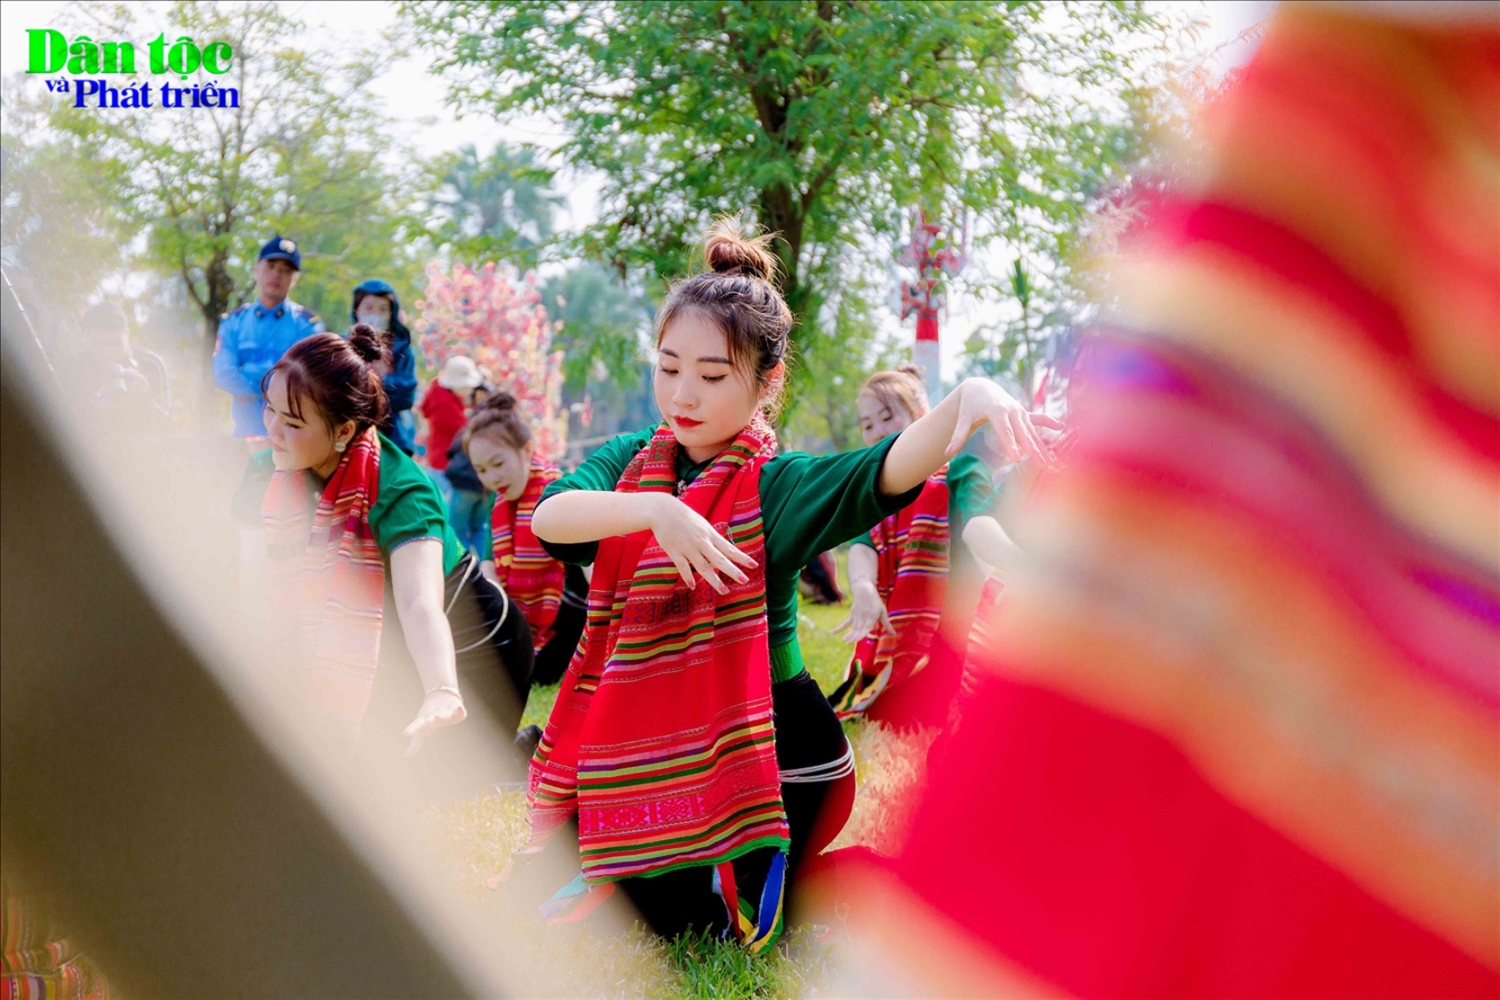 Trong lễ hội Then Kin Pang, các điệu múa, trò diễn tạo nên tính hấp dẫn, vui nhộn như điệu múa 